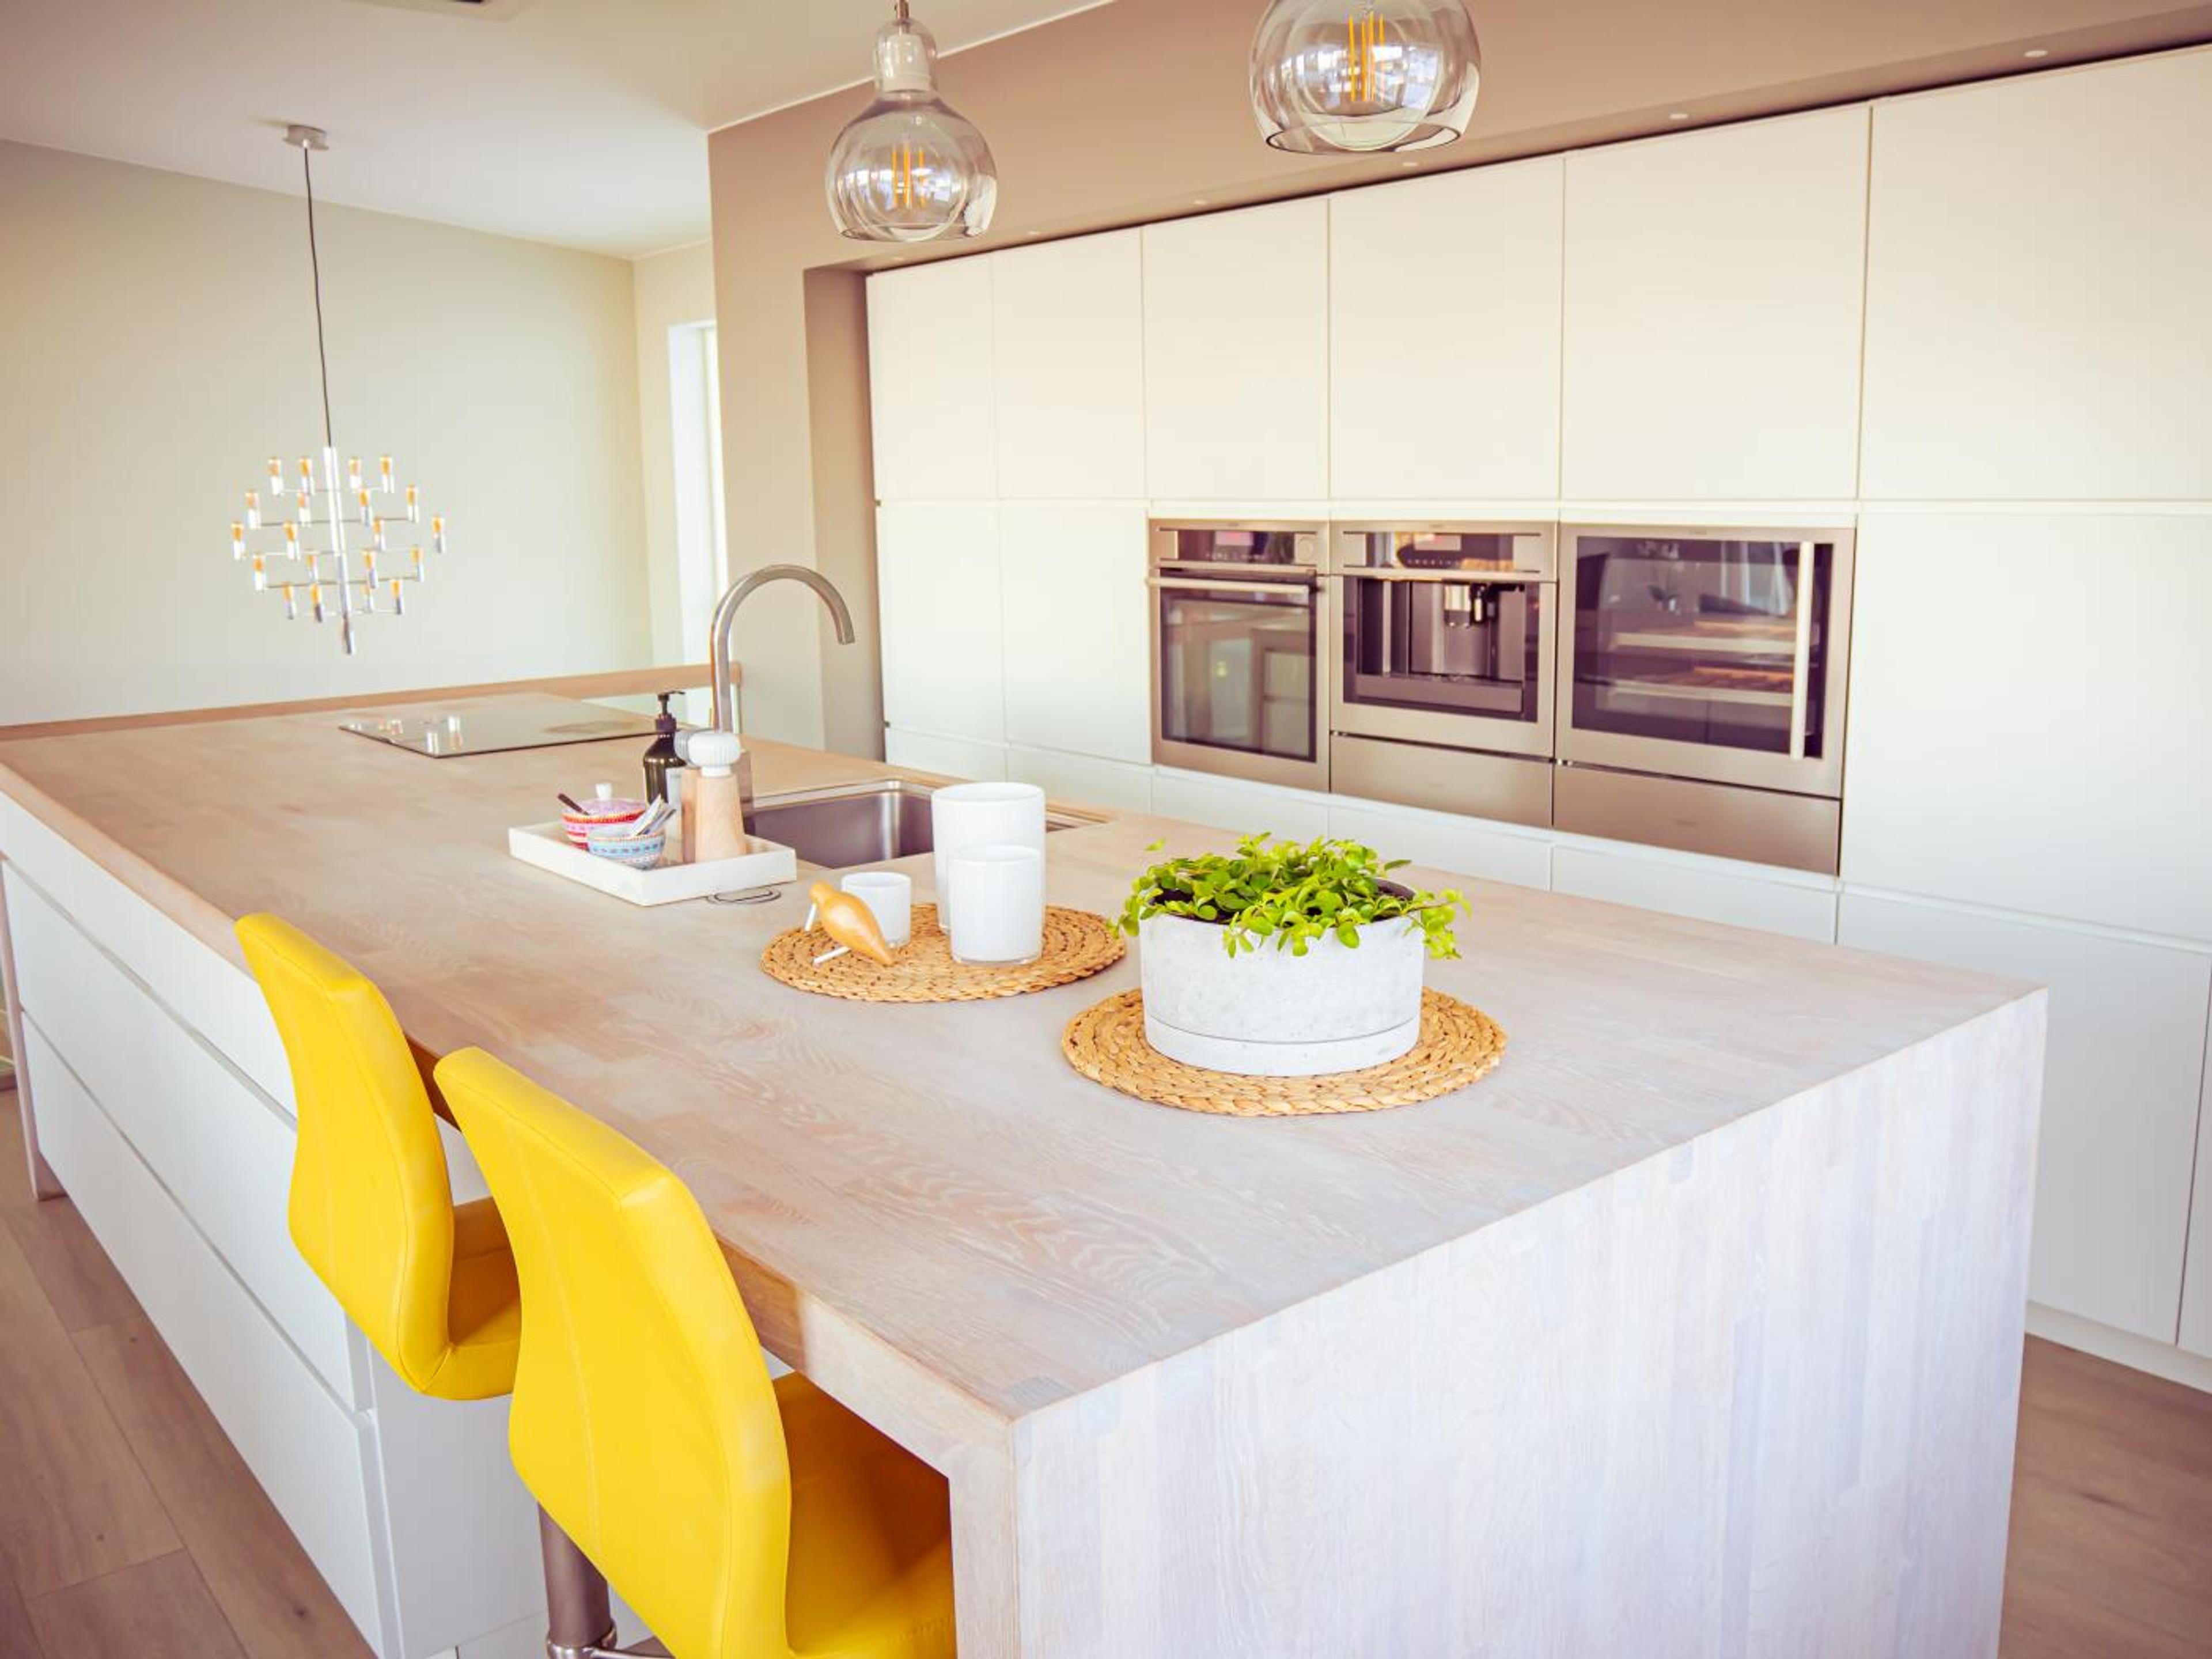 En stor kjøkkenøy med knall gule barstoler